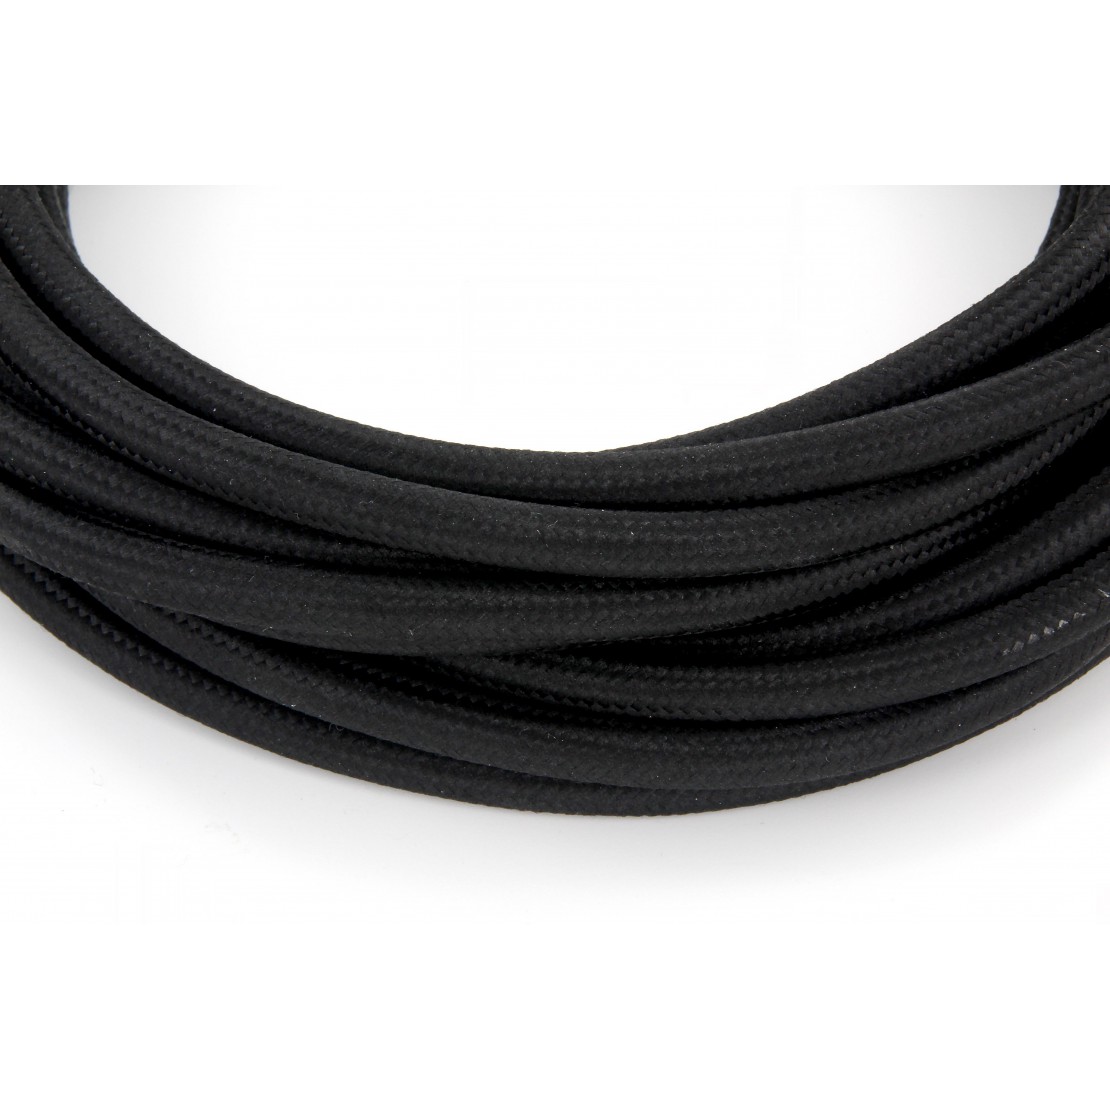 2m Interruptor 2-adrig Negro ledscom.de Cable Textil con Enchufe 